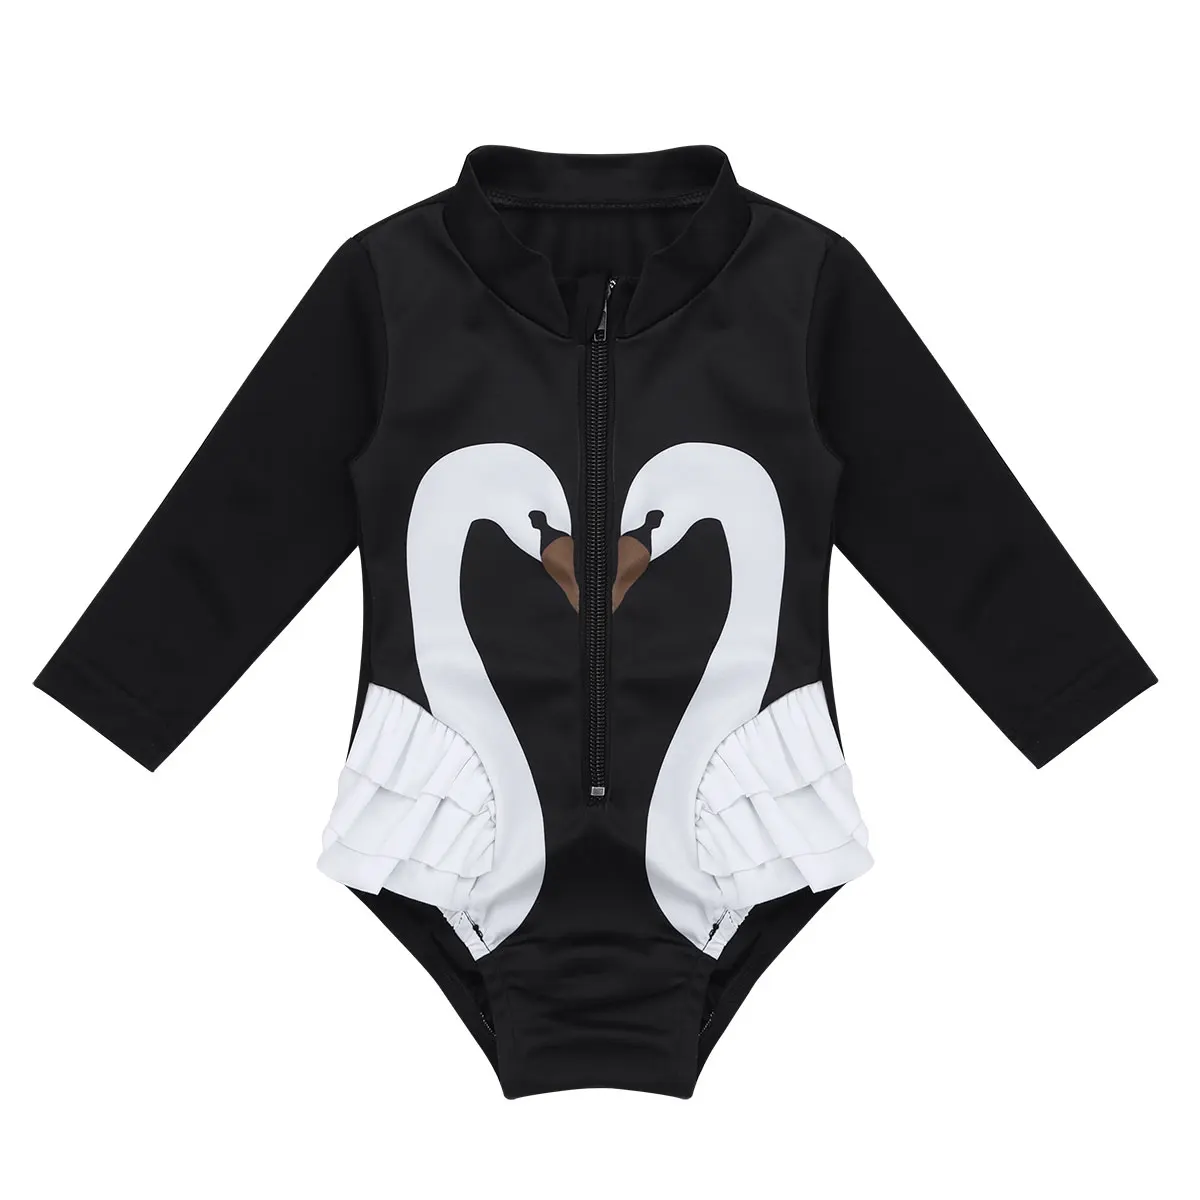 Купальный костюм для новорожденных, летний костюм с солнышком для маленьких девочек, купальный костюм с длинными рукавами и принтом лебедя, купальная одежда, цельный купальный костюм для девочек - Цвет: Black